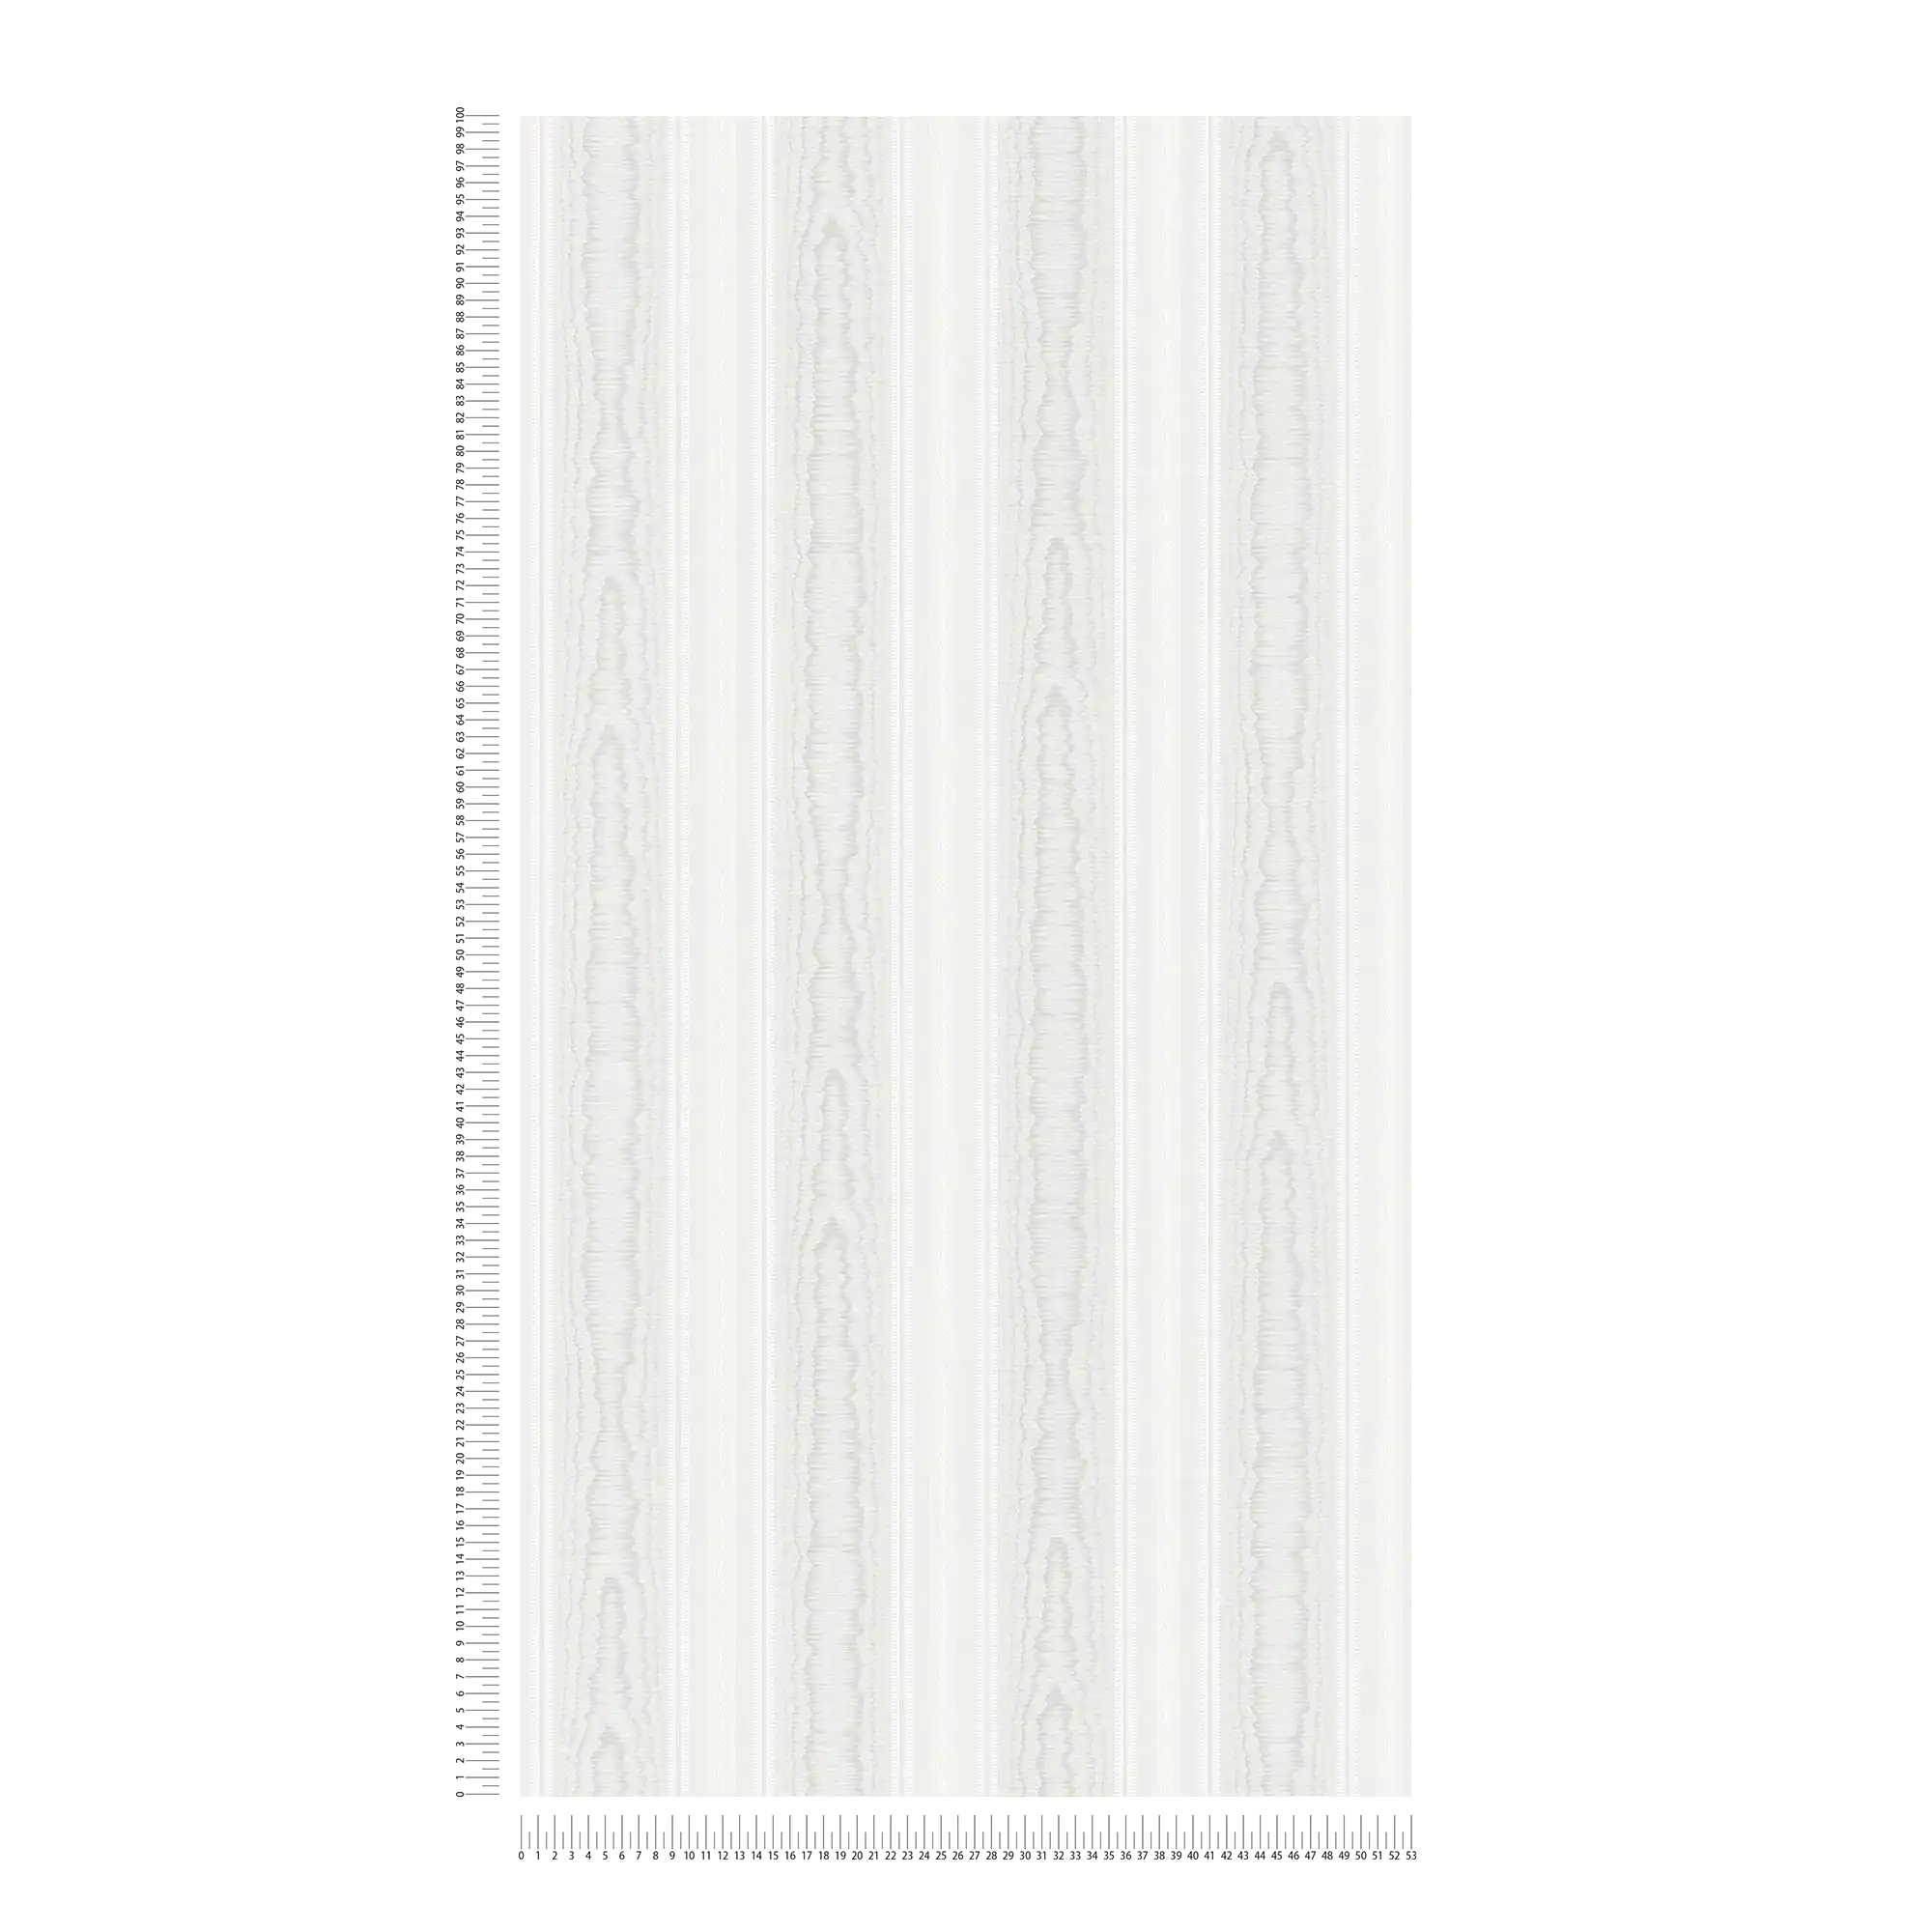             Carta da parati a strisce con motivi effetto legno - crema, bianco
        